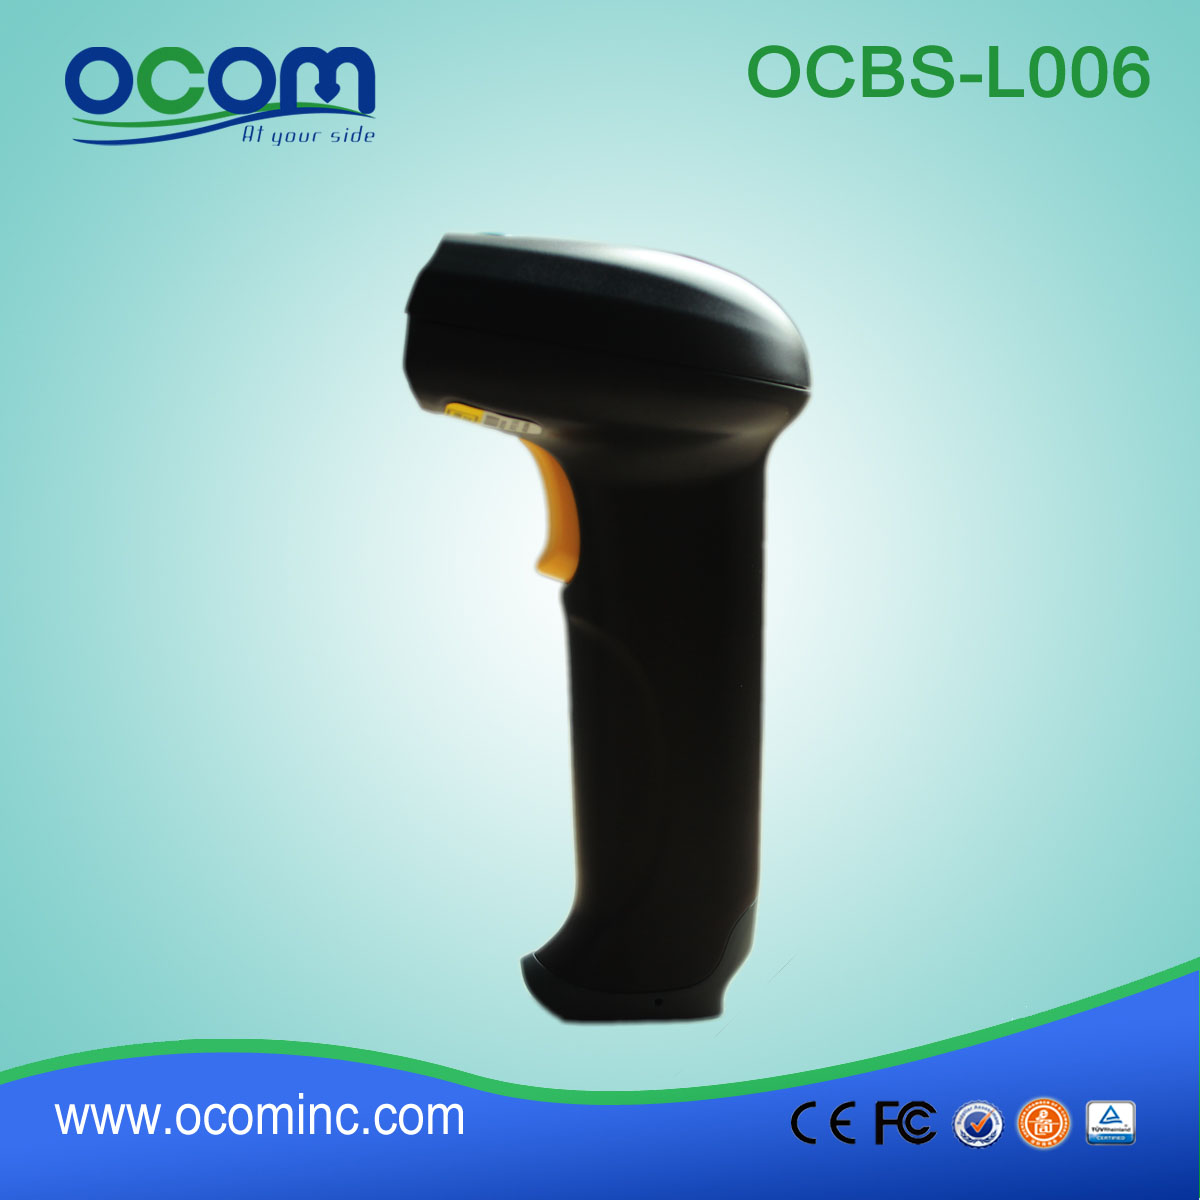 OCB-L006 USB portatile Laser Barcode Scanner